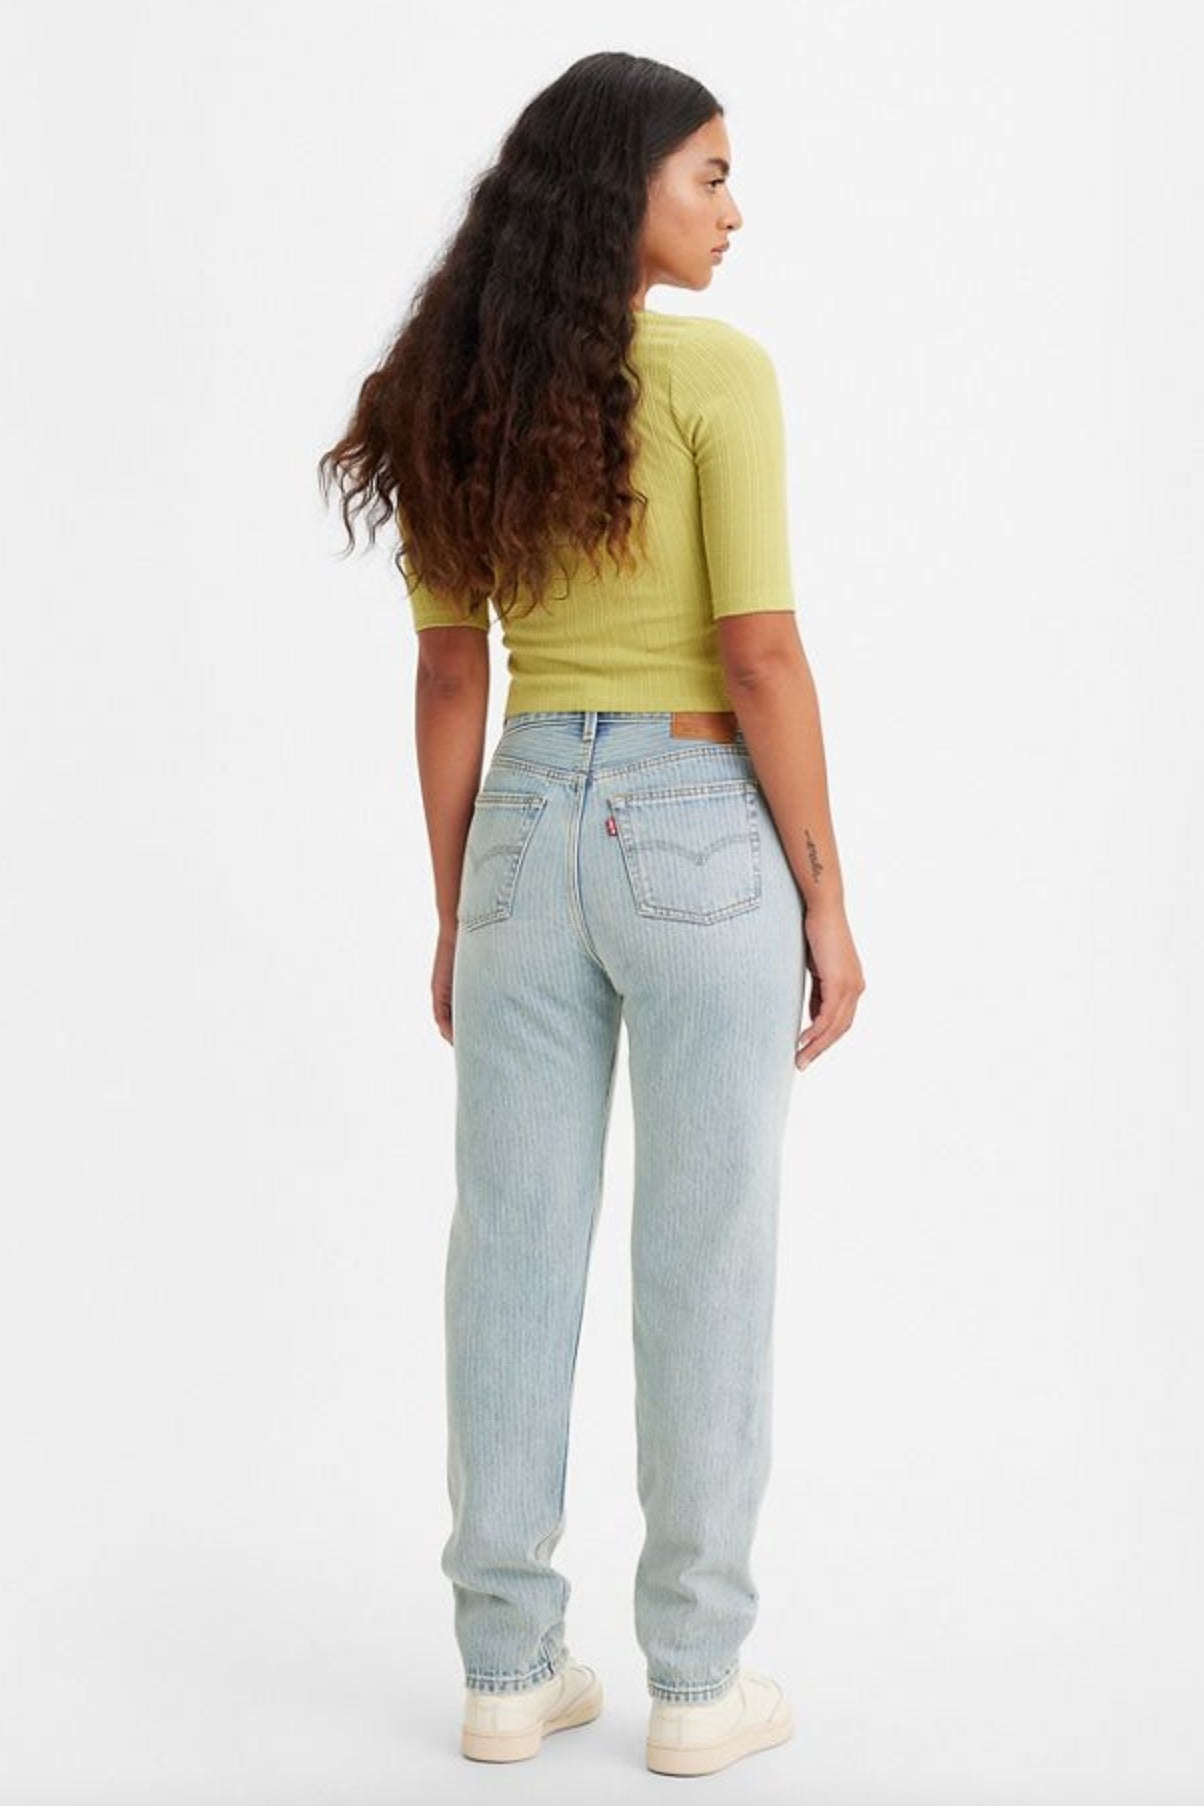 Levi's 501 '81 Women's Jeans - Maude